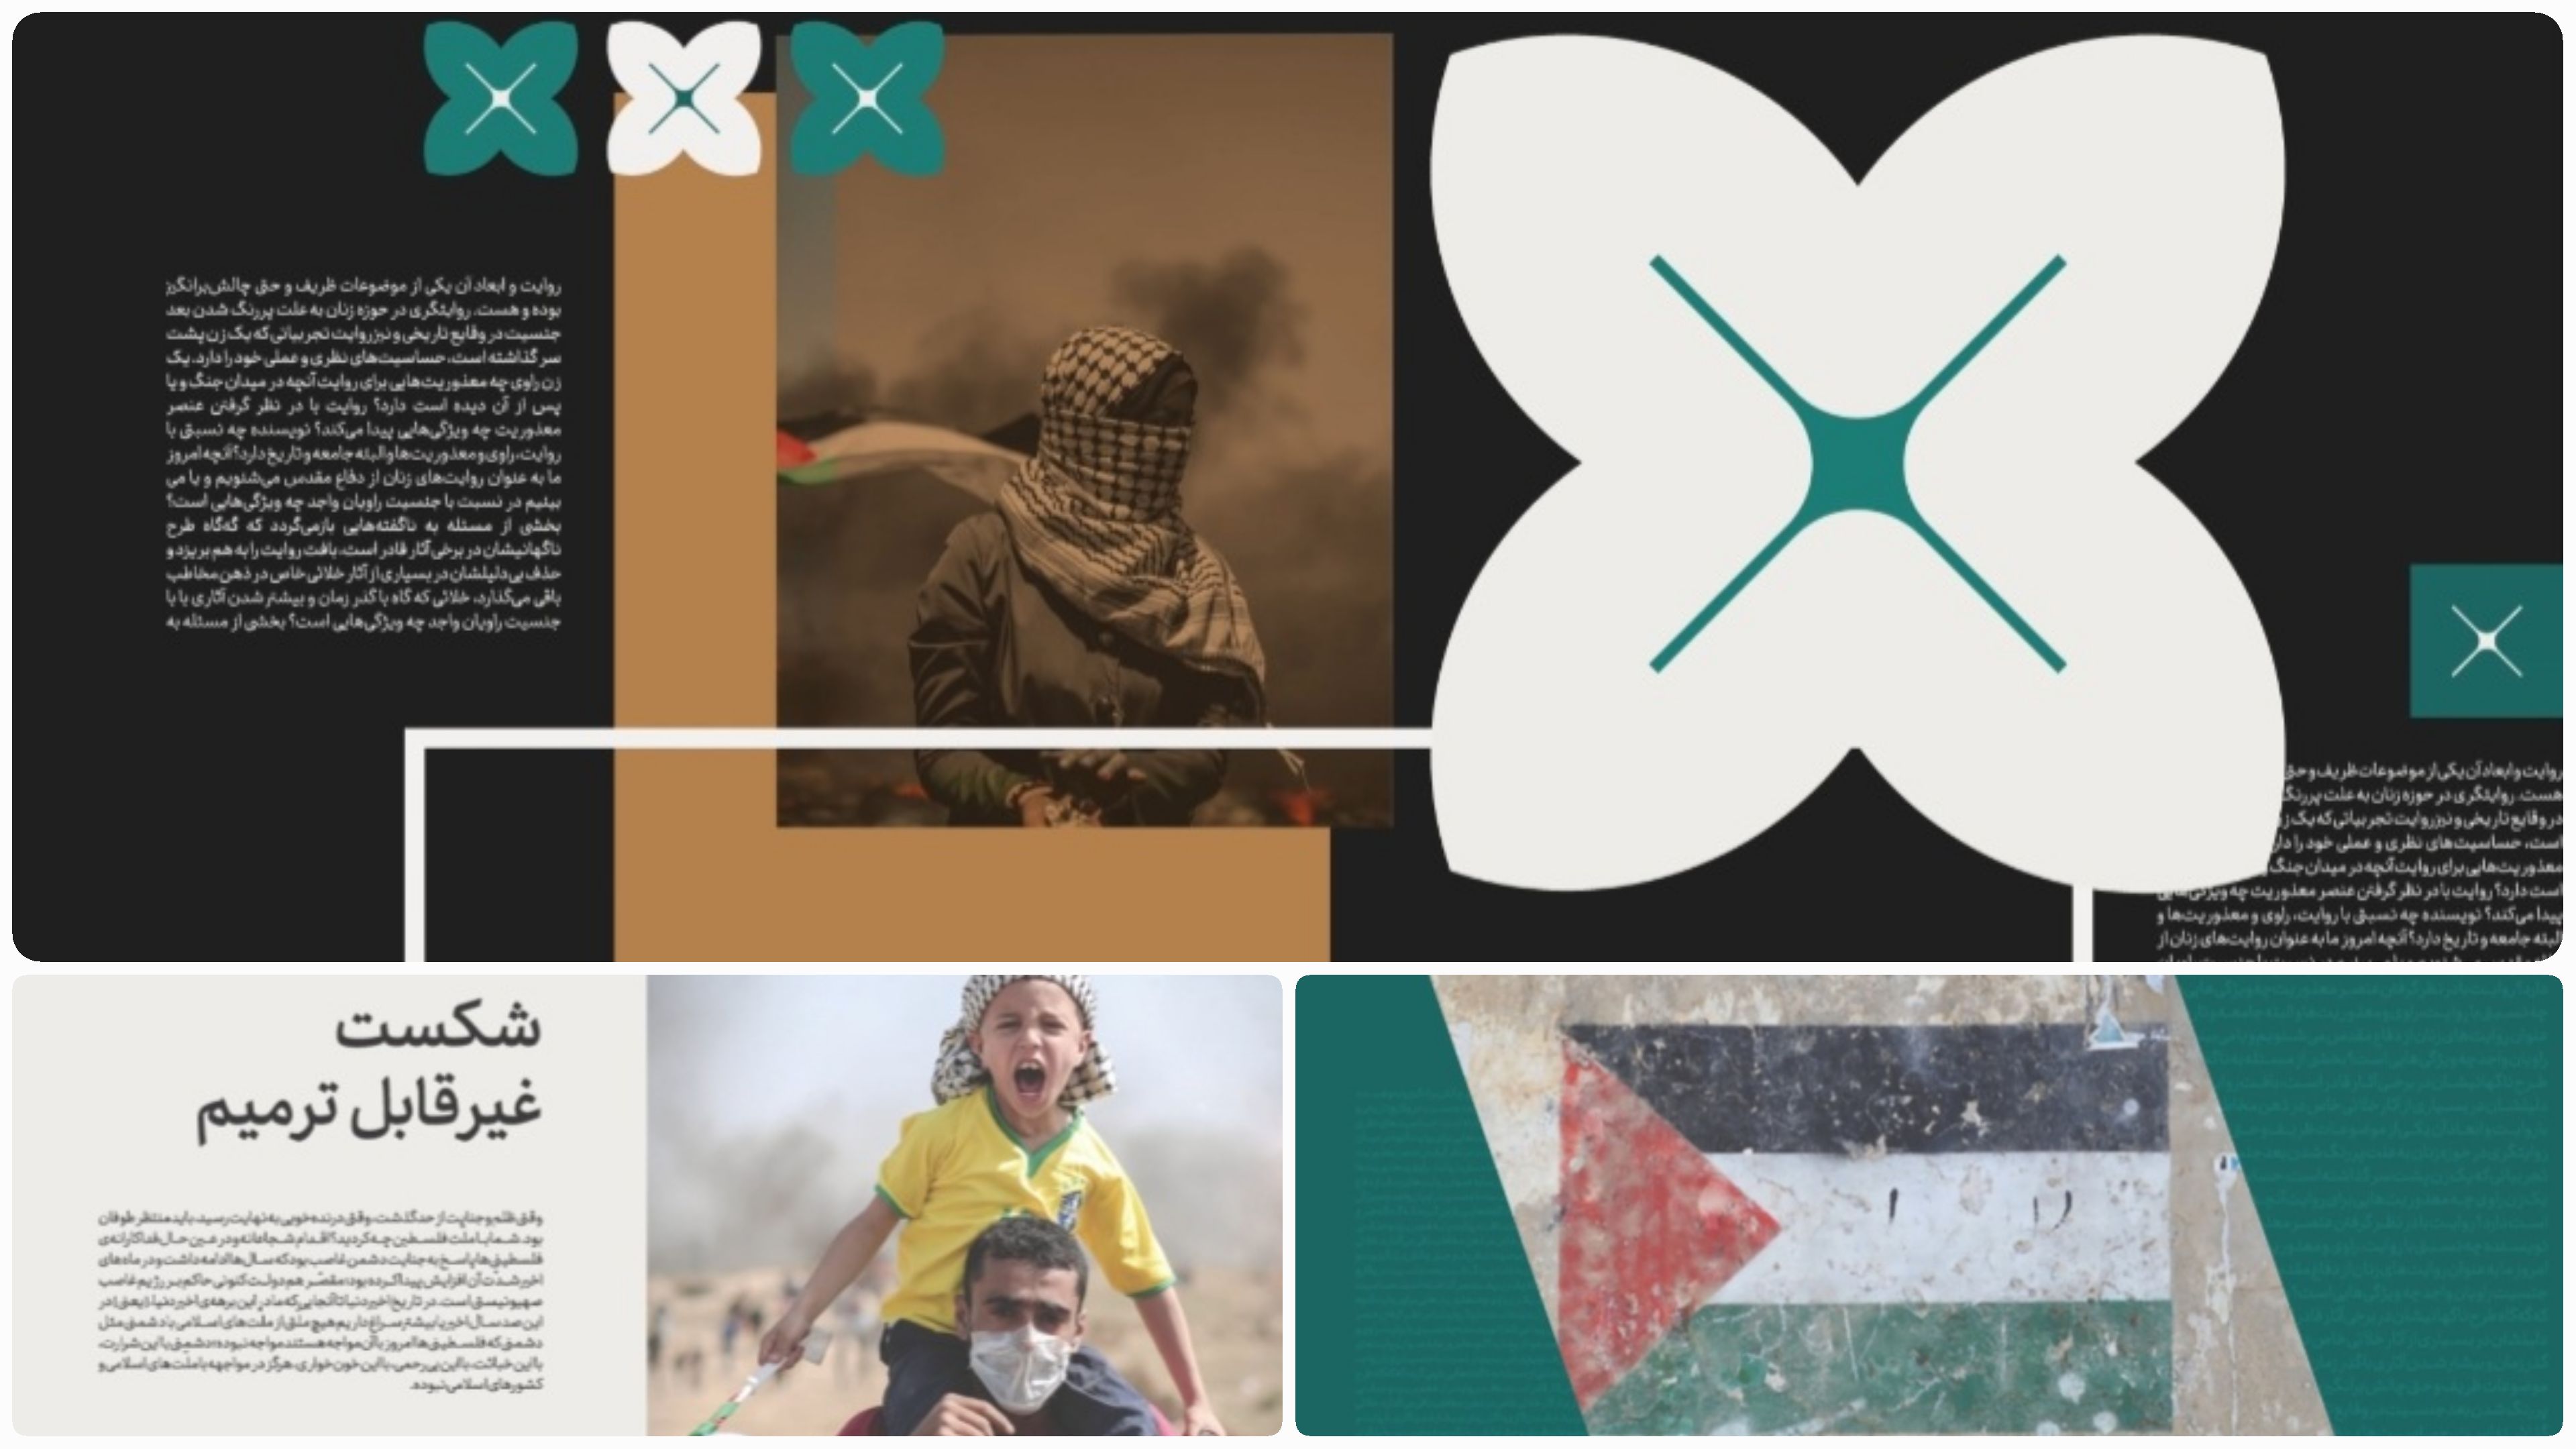 ویژه برنامه «خط سوم» با موضوع زندگی، زن و مقاومت در مرزهای فلسطین